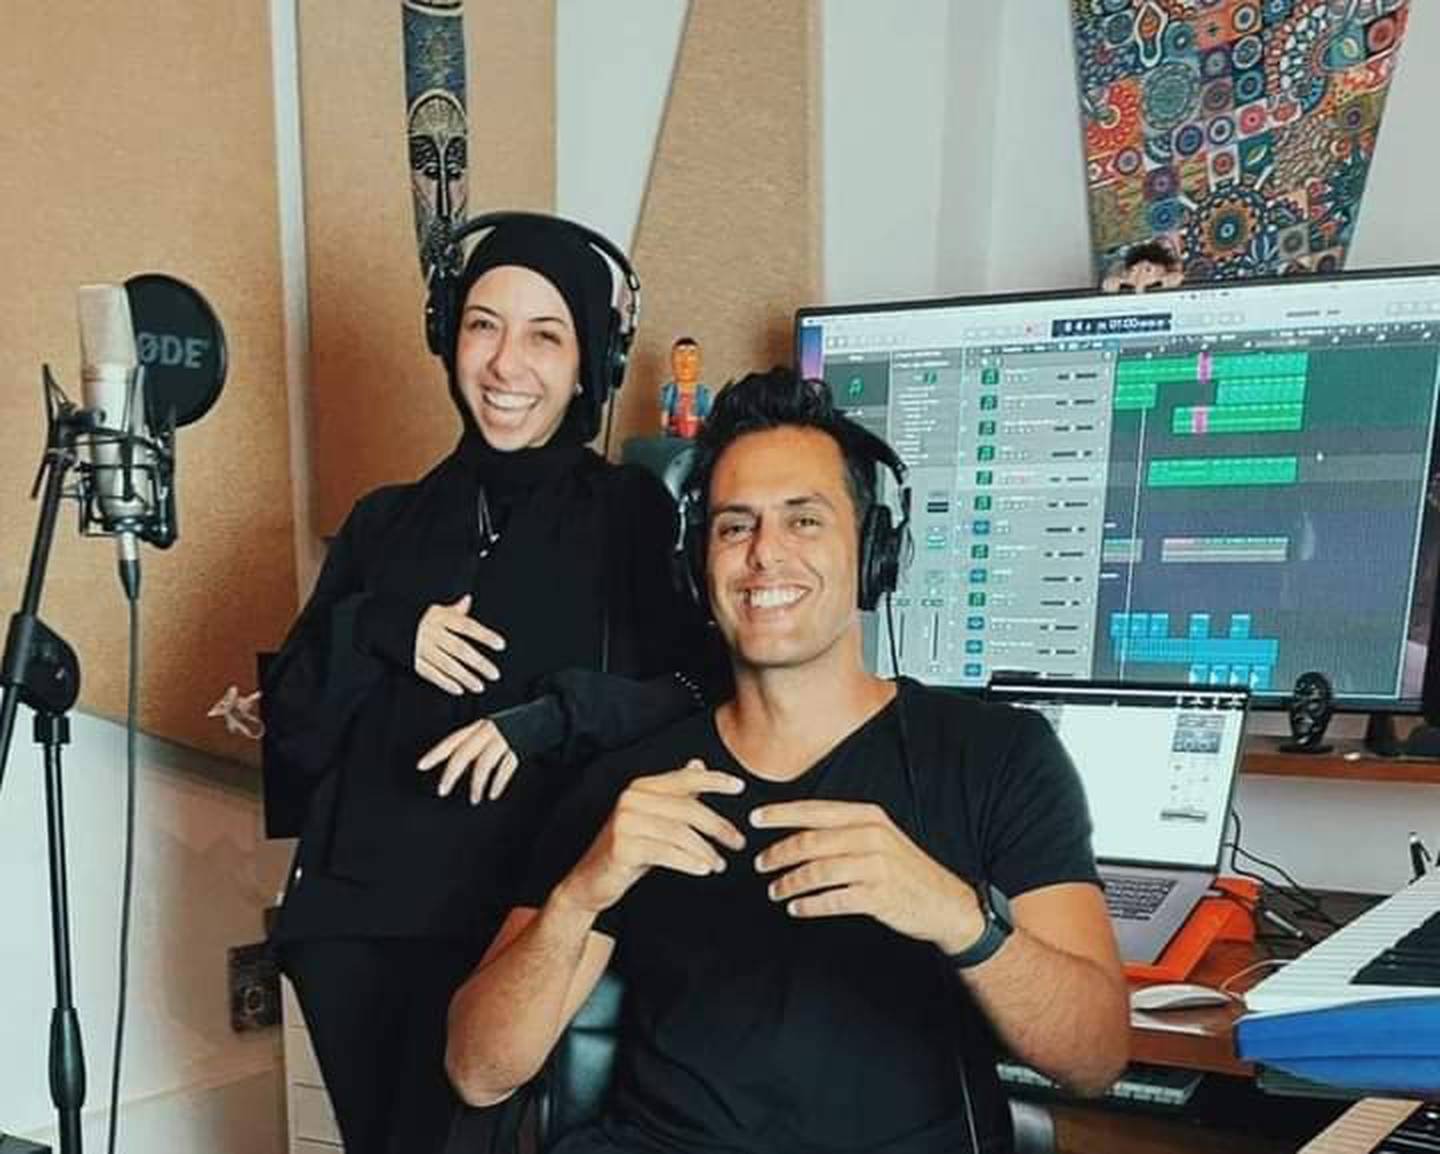 هشام كرمة وتسنيم العايدي هما المغنيات في الأغنية.  تصوير: هشام كرمة